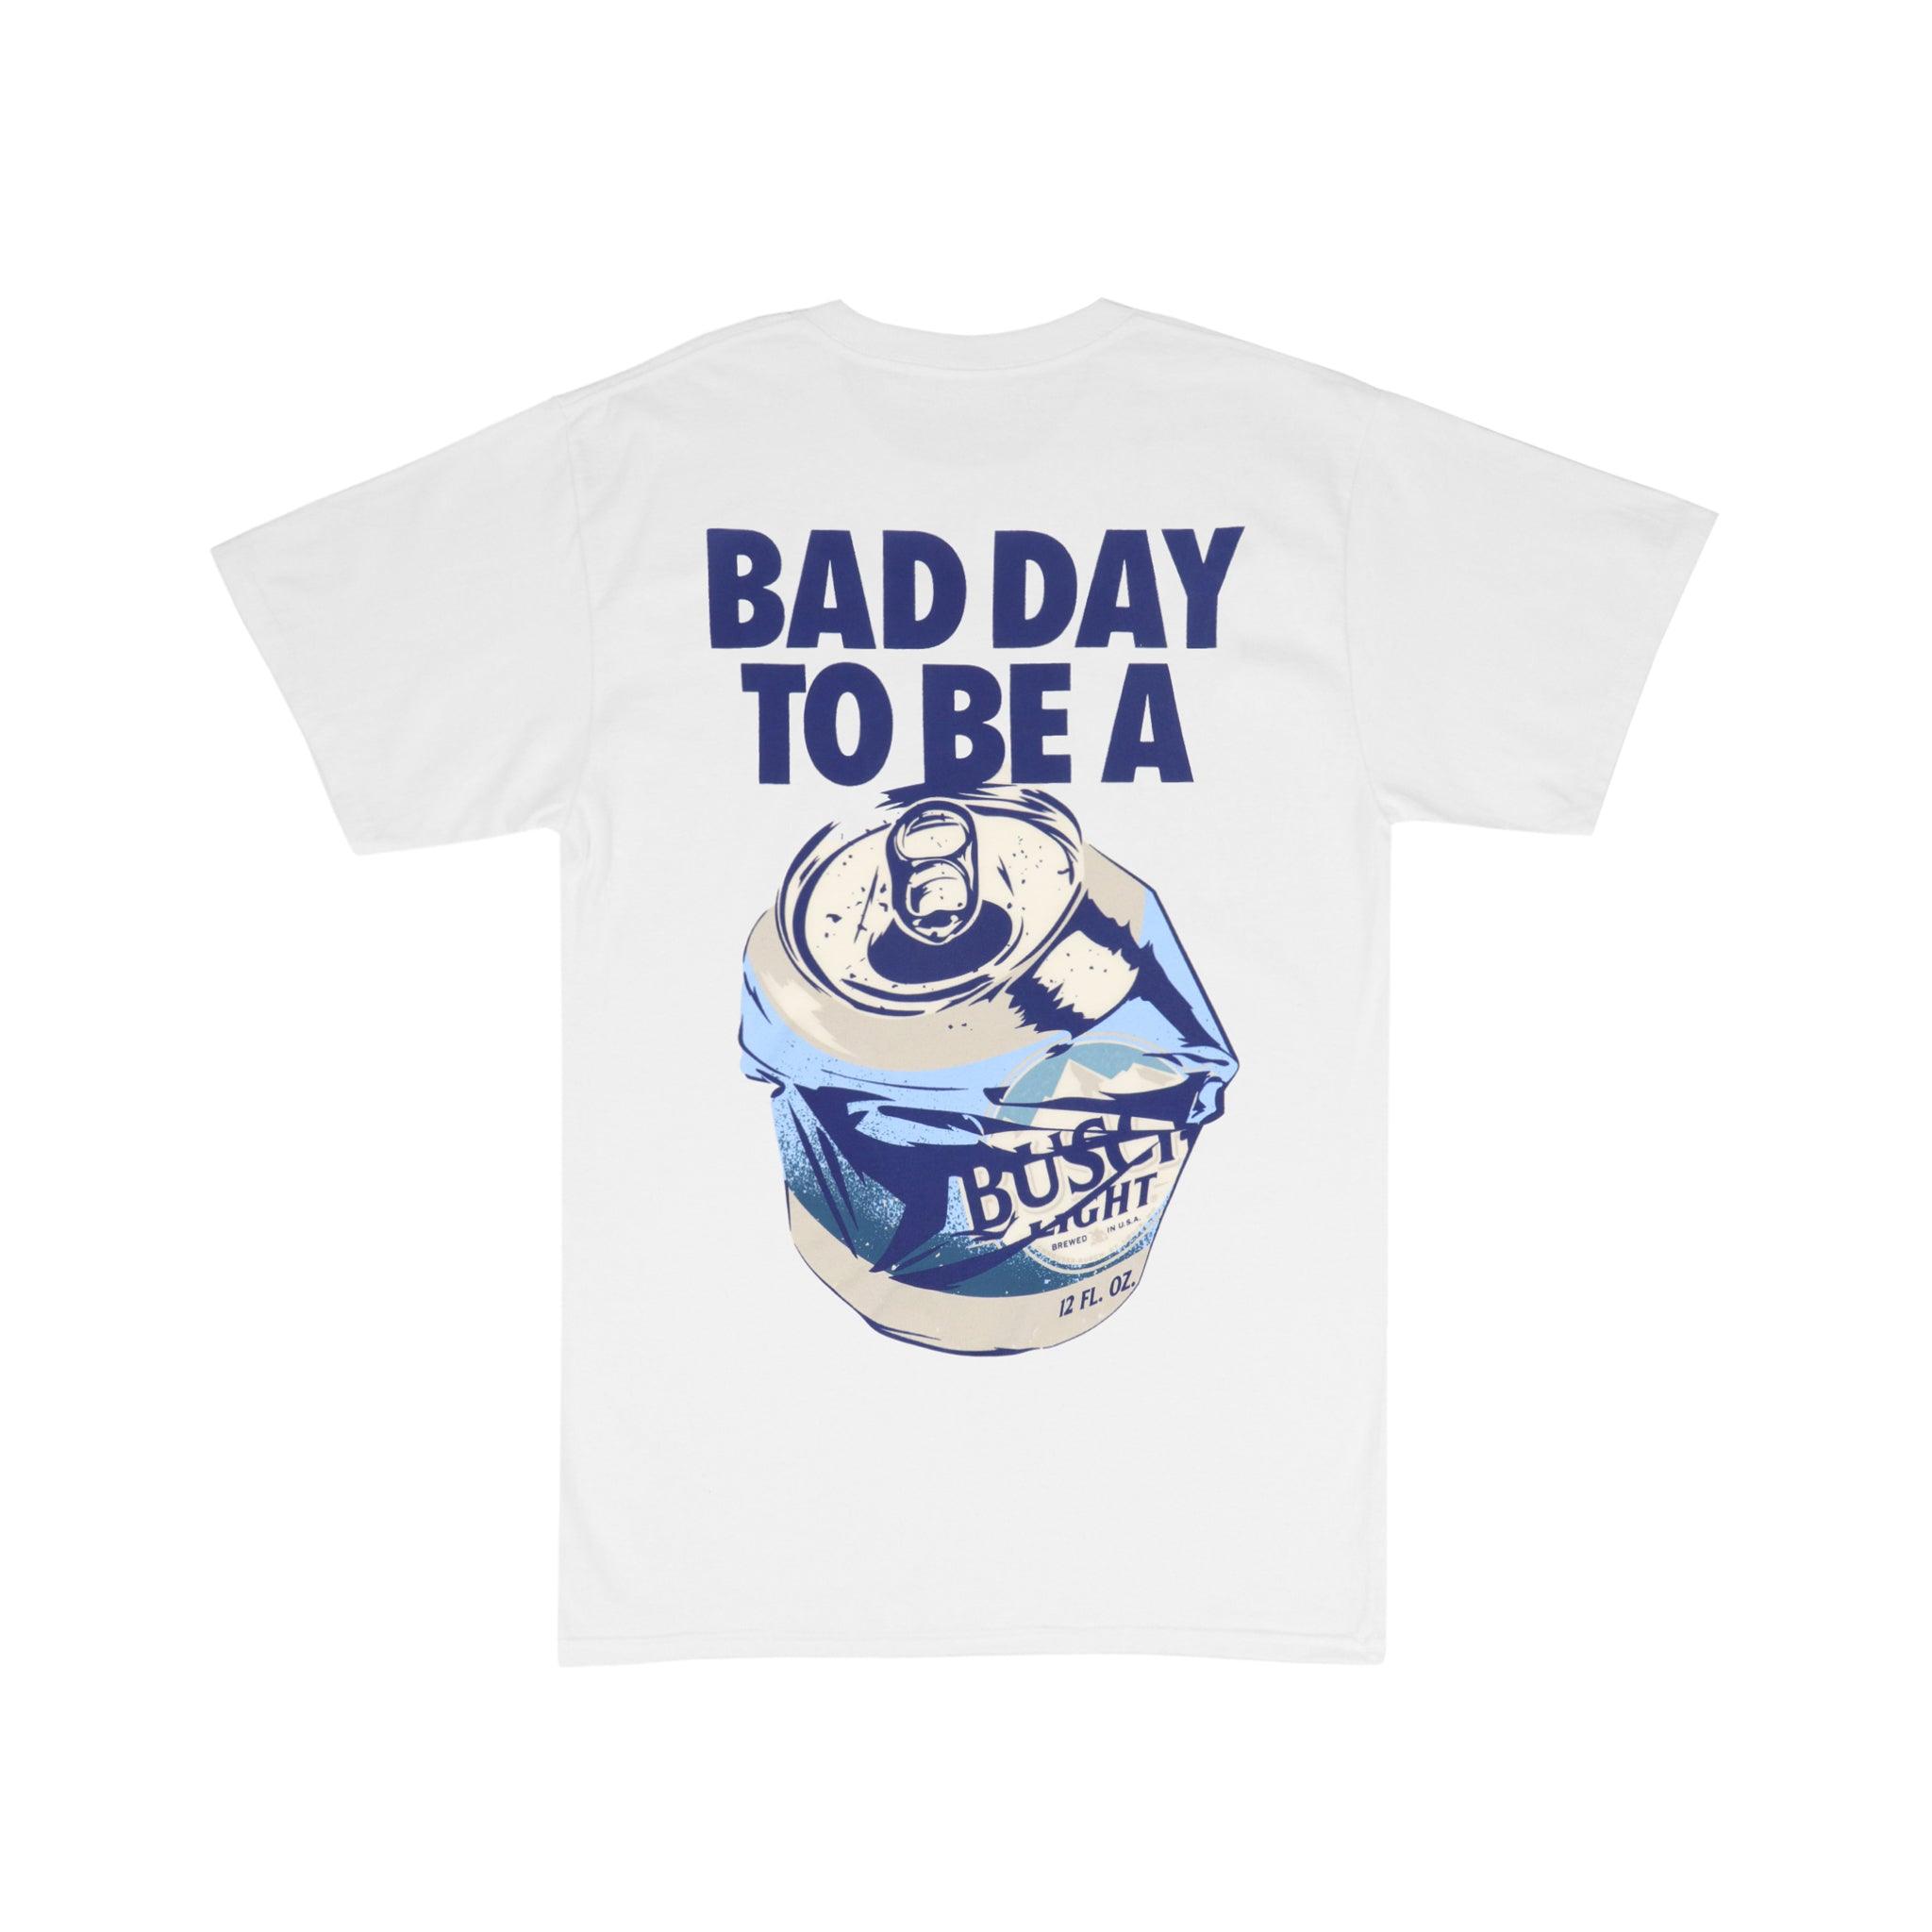 Busch Light Bad Day T-Shirt S